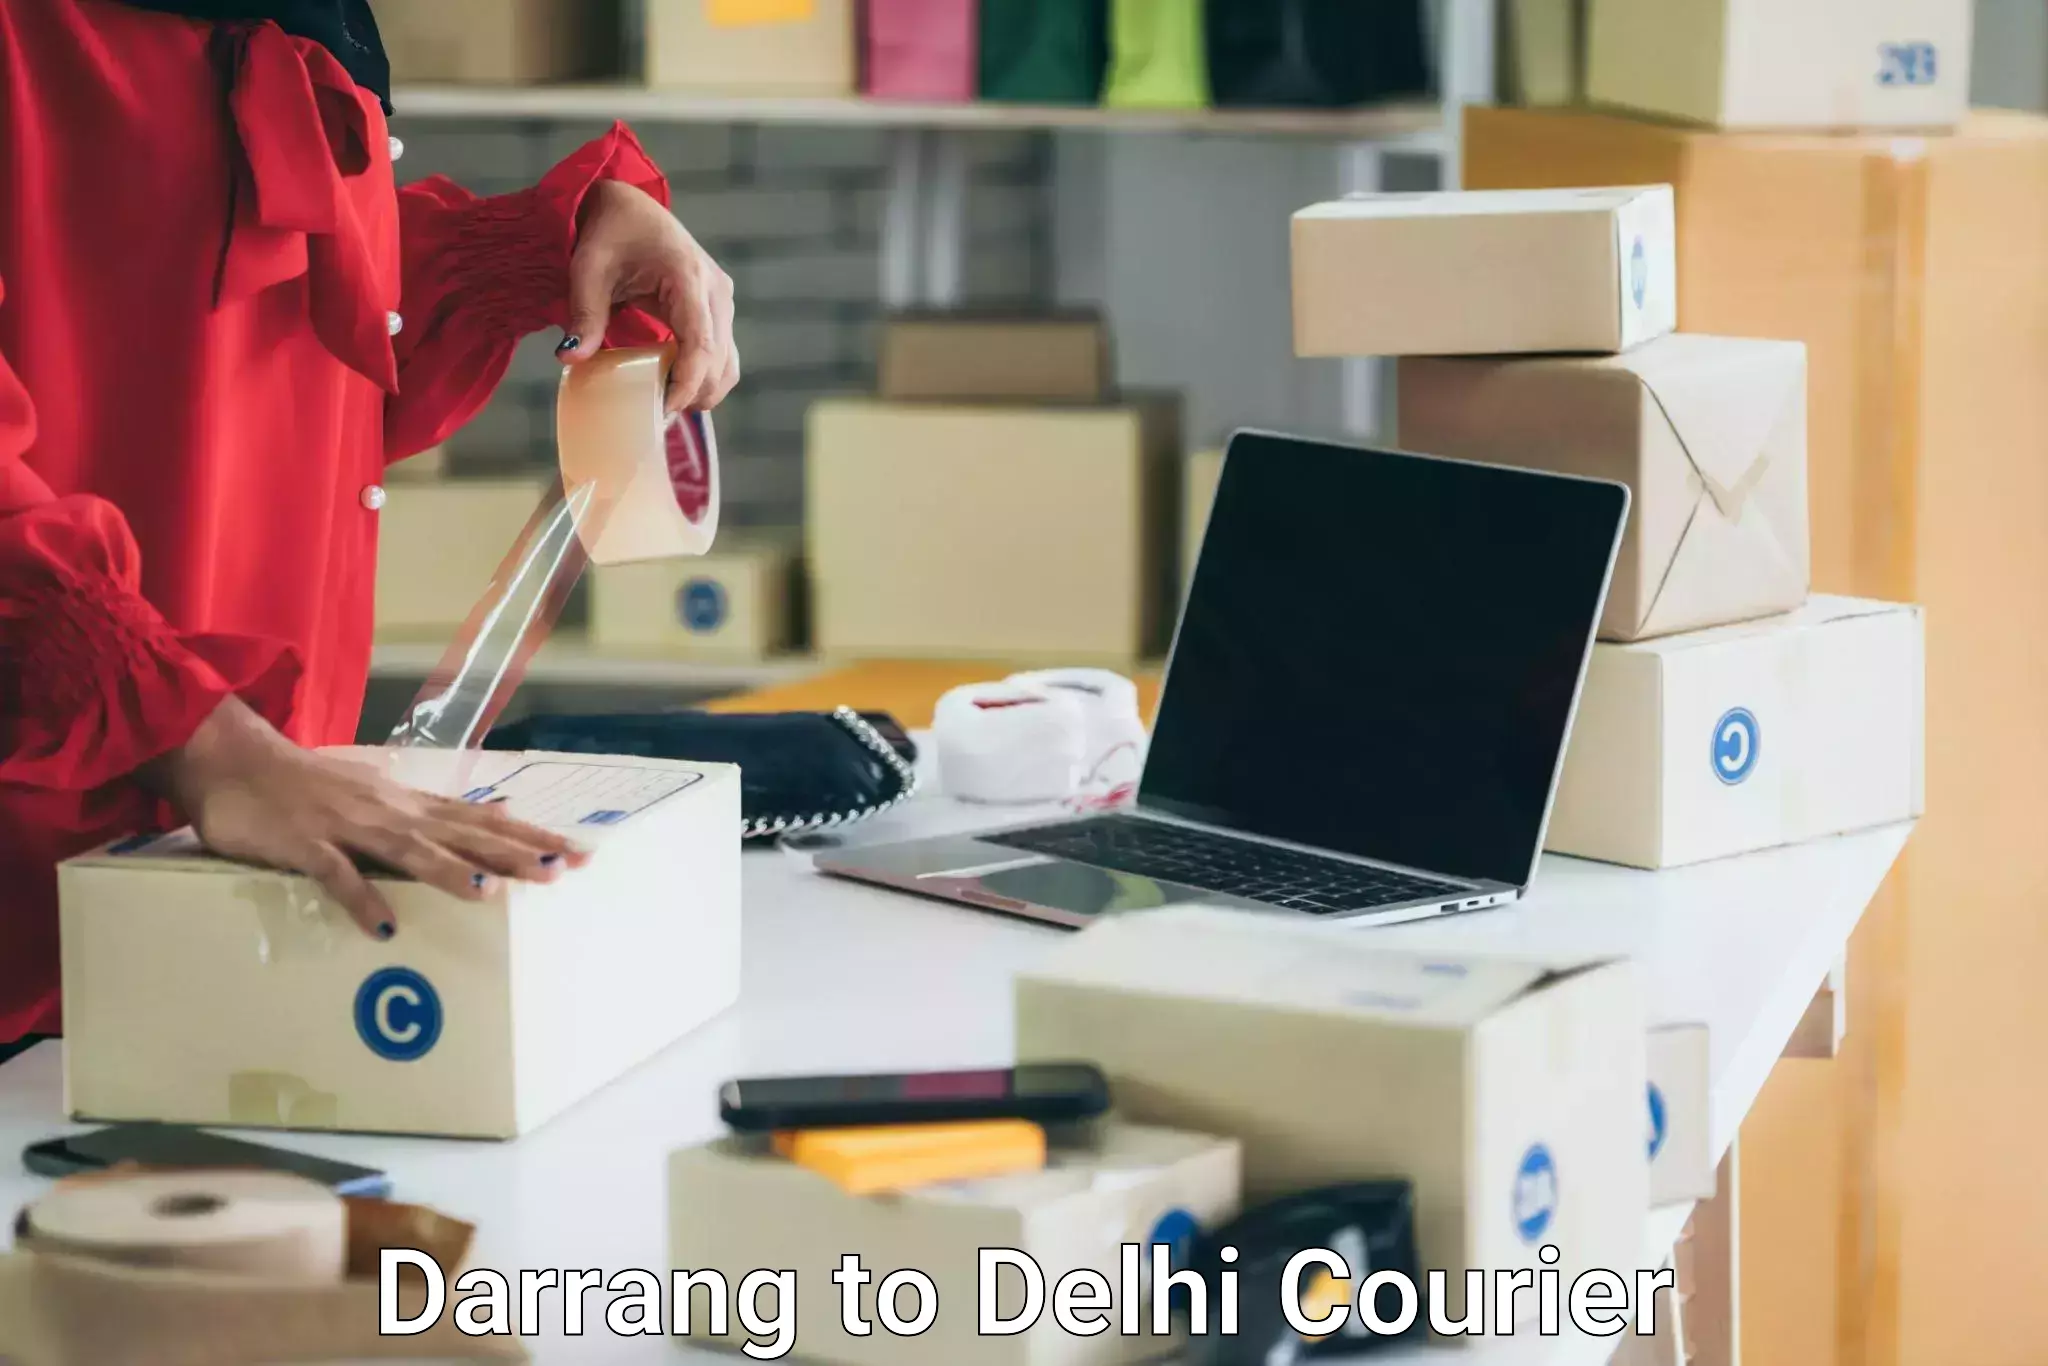 Professional furniture movers Darrang to Delhi